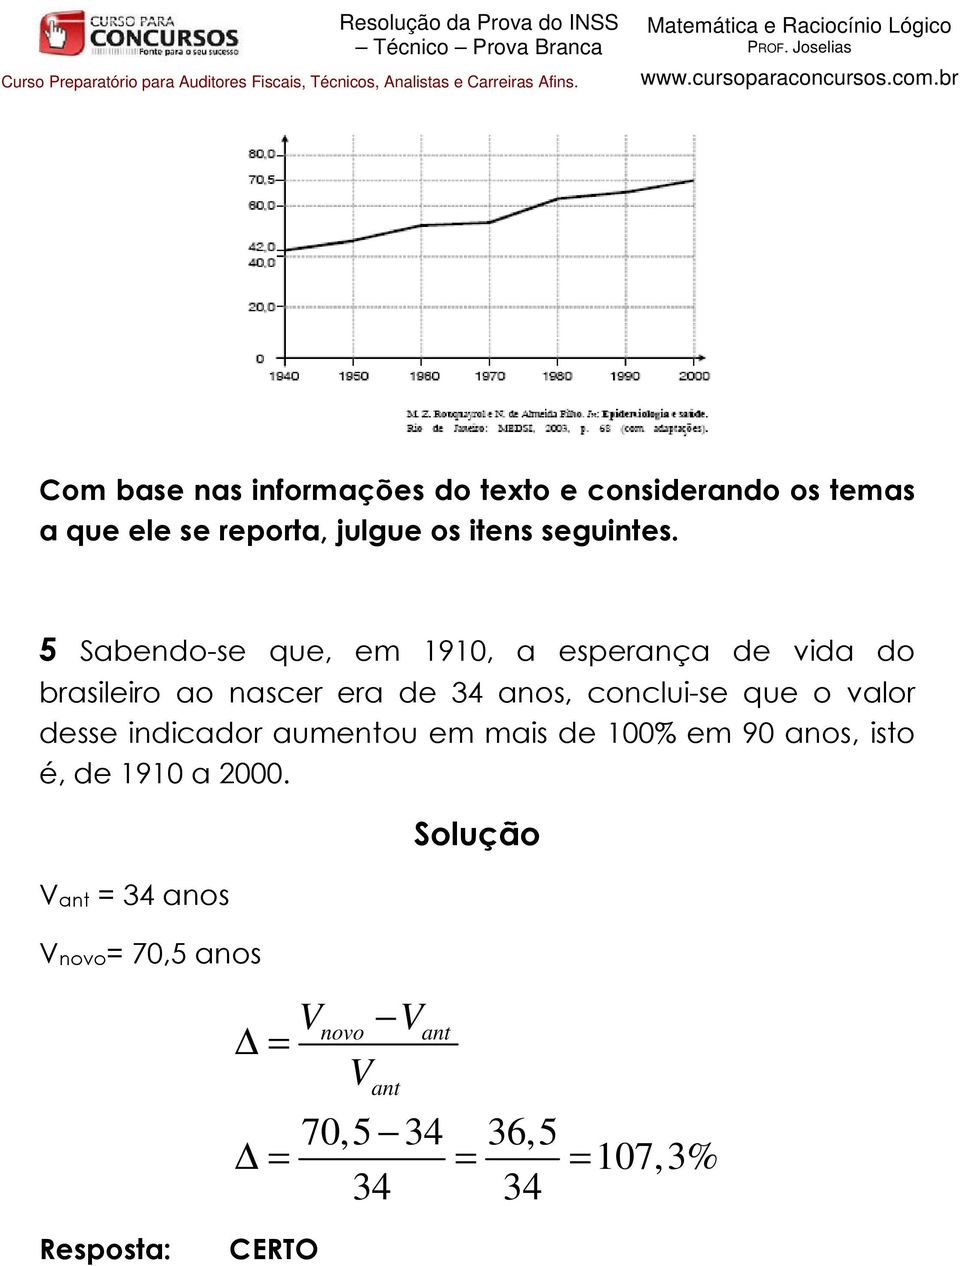 5 Sabendo-se que, em 1910, a esperança de vida do brasileiro ao nascer era de 34 anos,